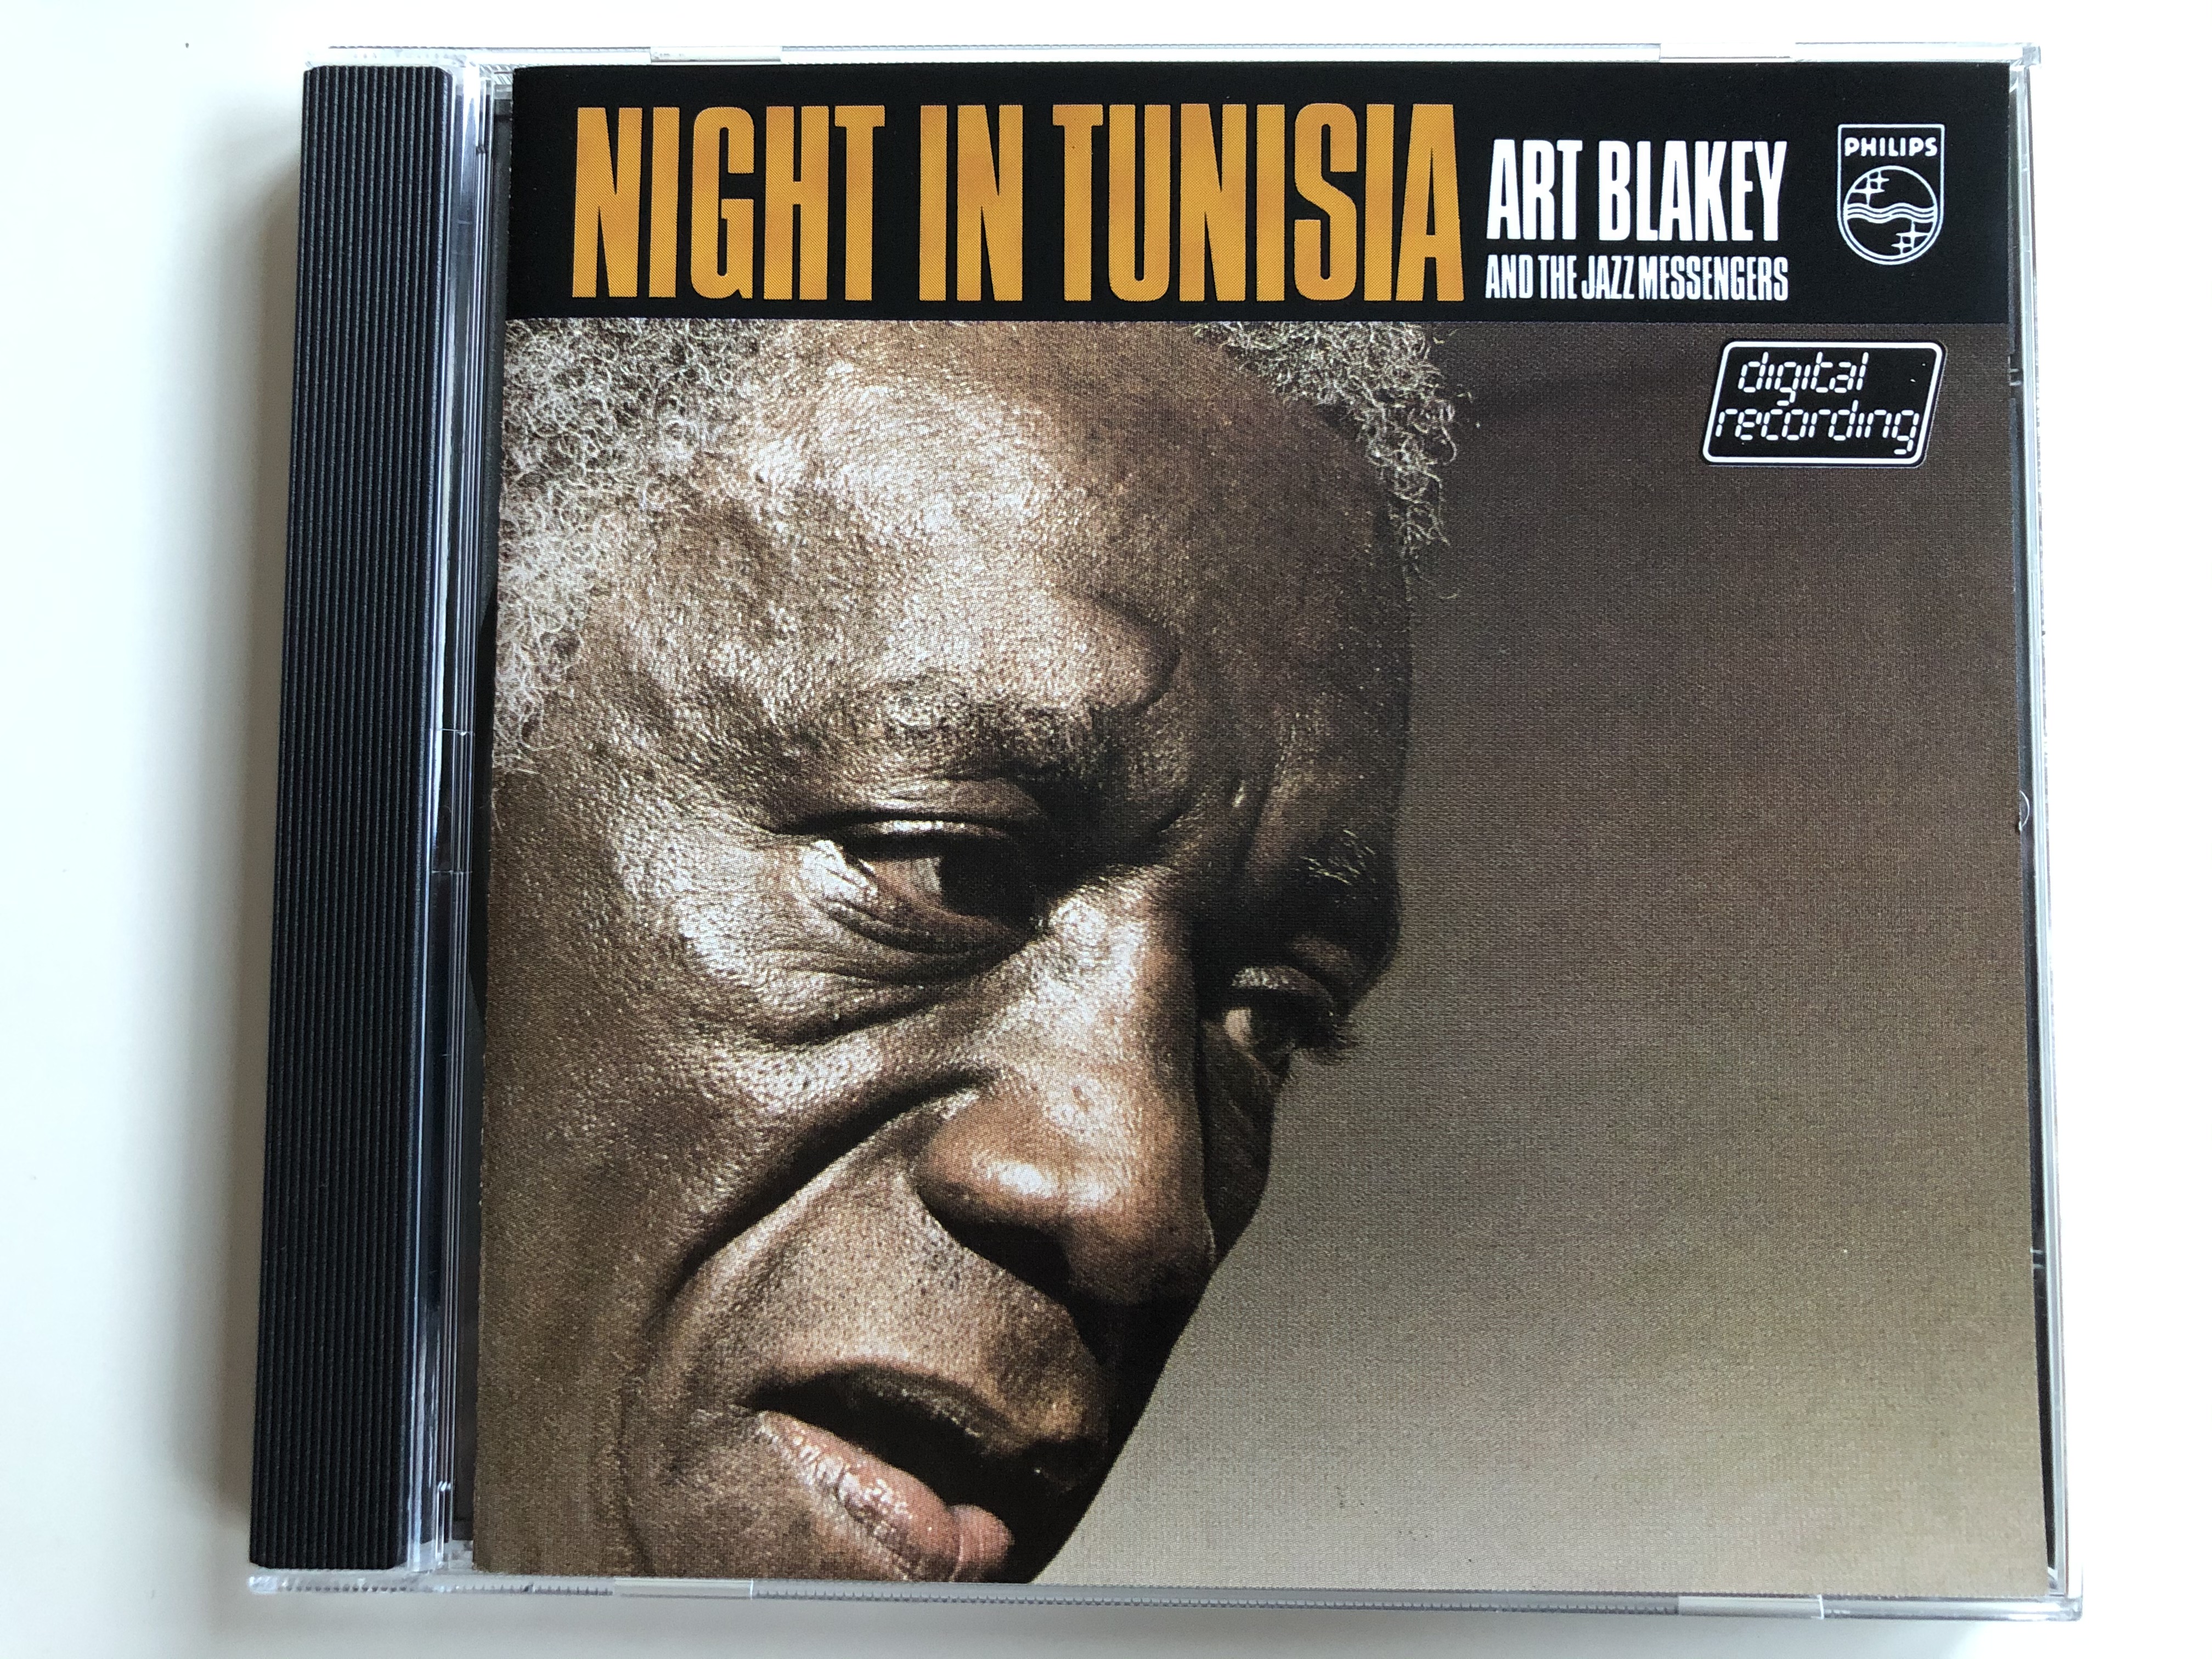 night-in-tunisia-art-blakey-the-jazz-messengers-philips-audio-cd-1979-800-064-2-1-.jpg